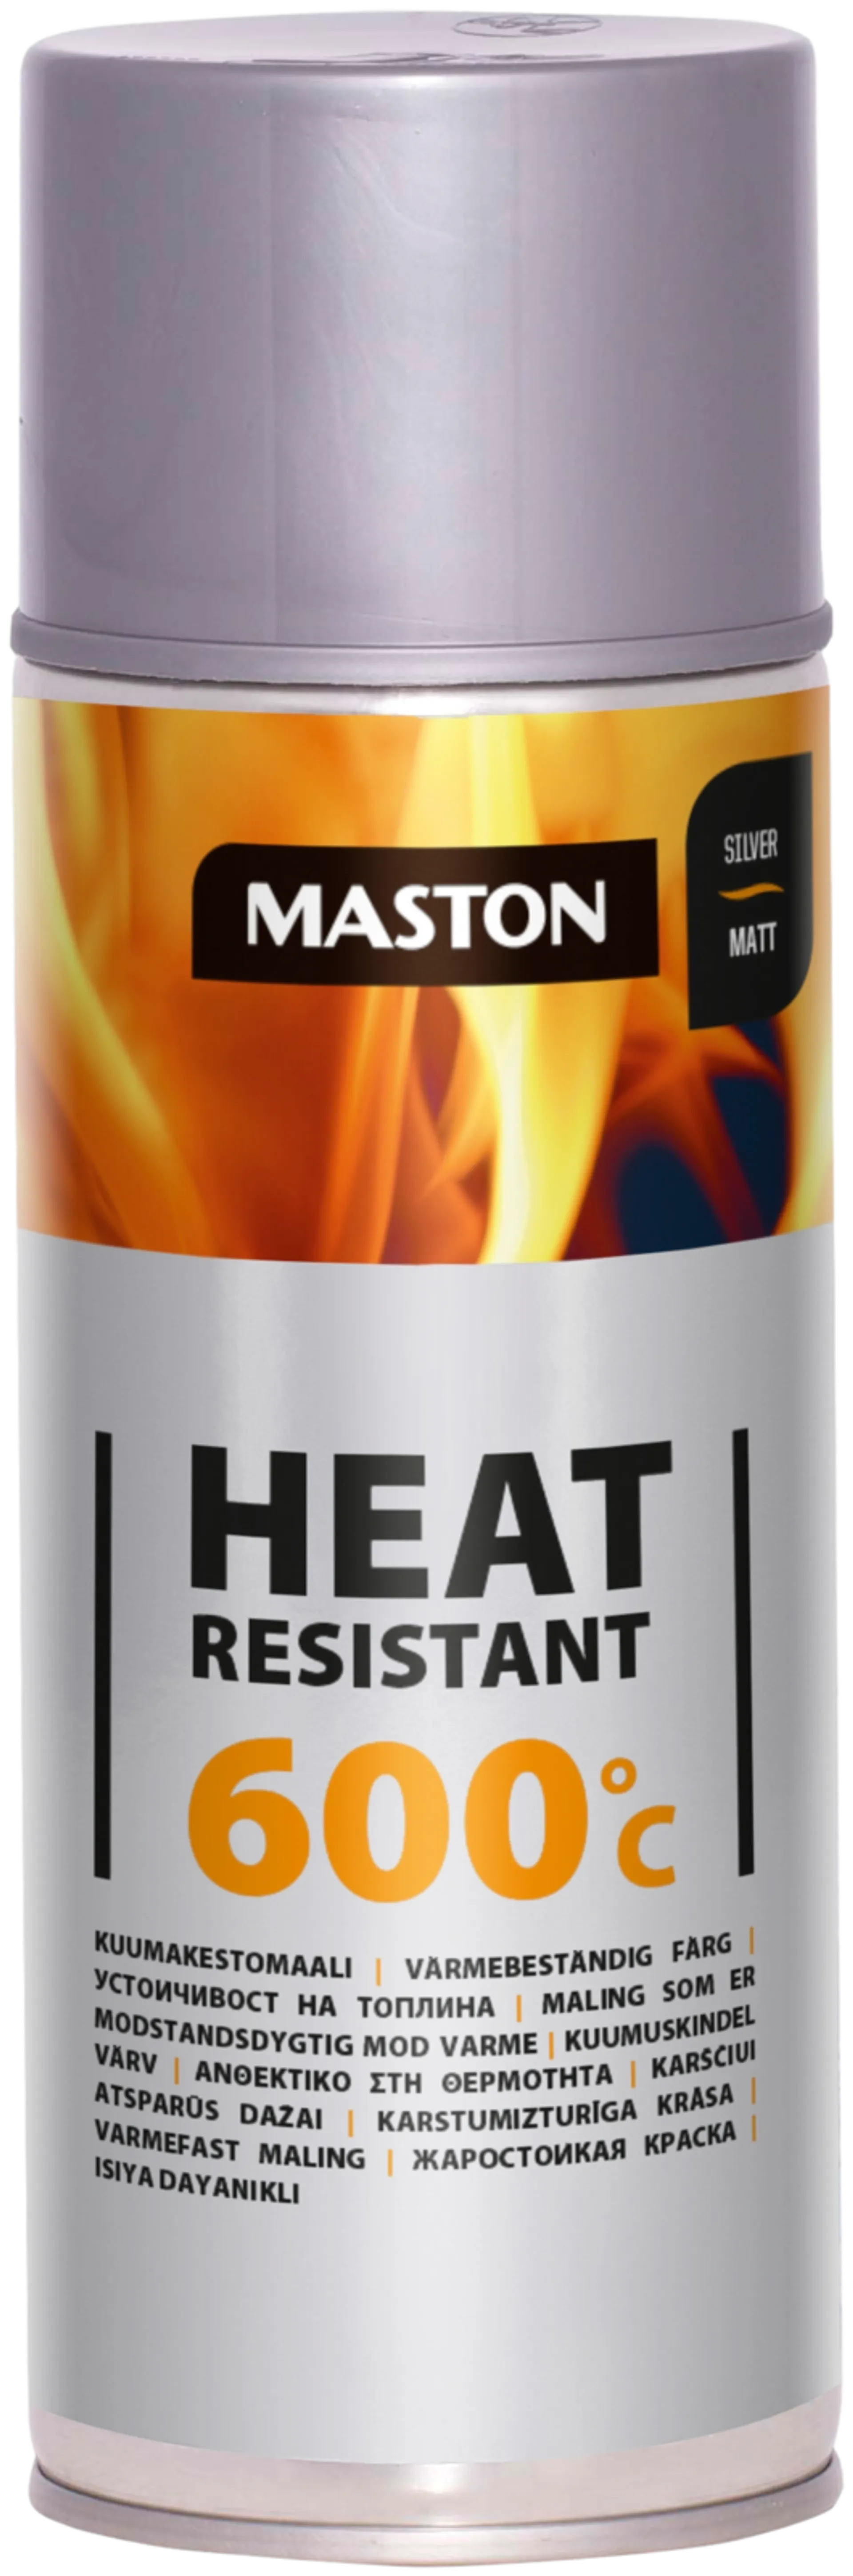 Maston kuumakestomaali 600°C spray hopea 400ml